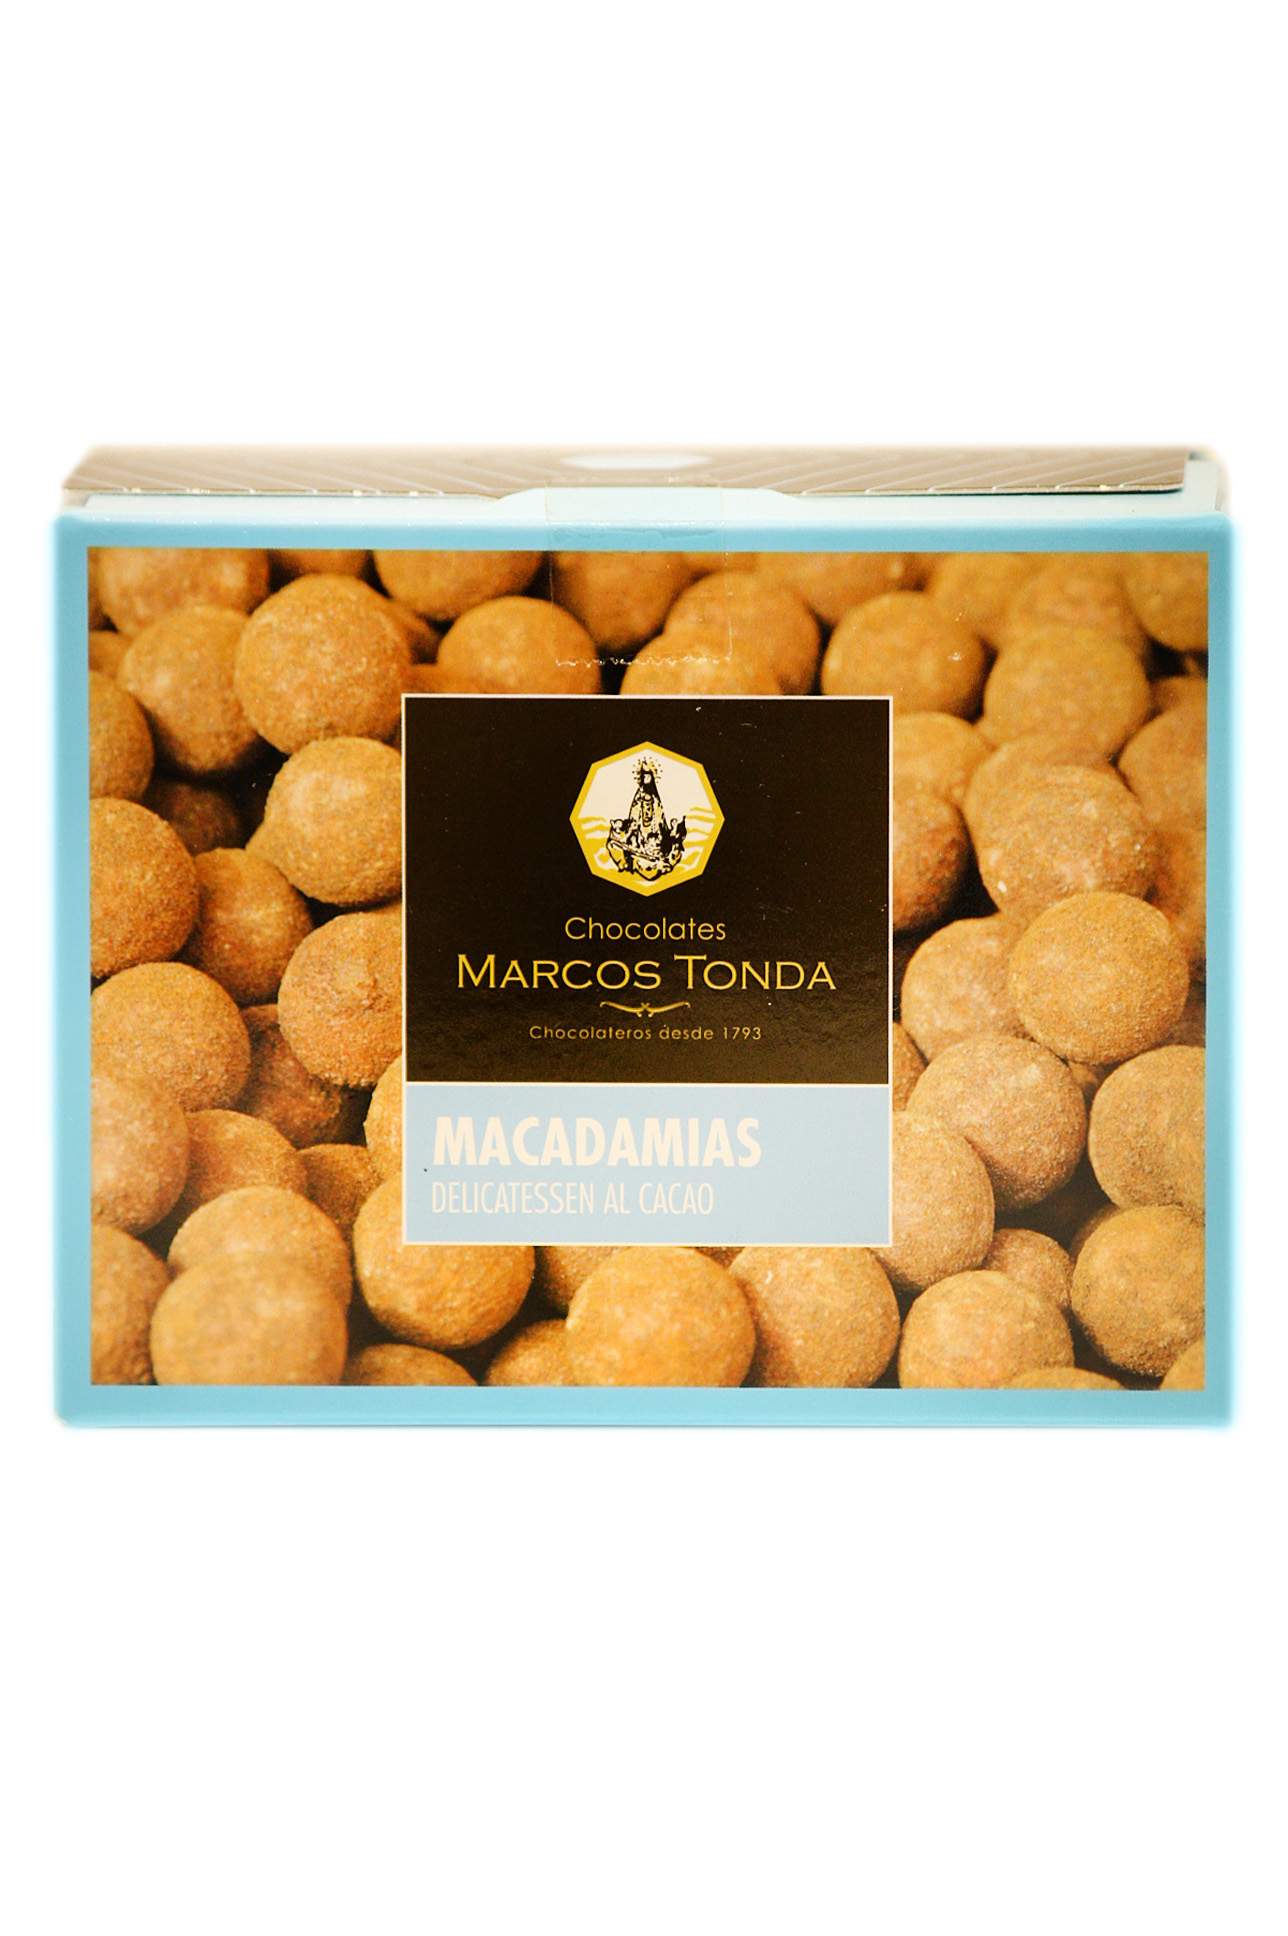 Macadamias Al Cacao Marcos tonda